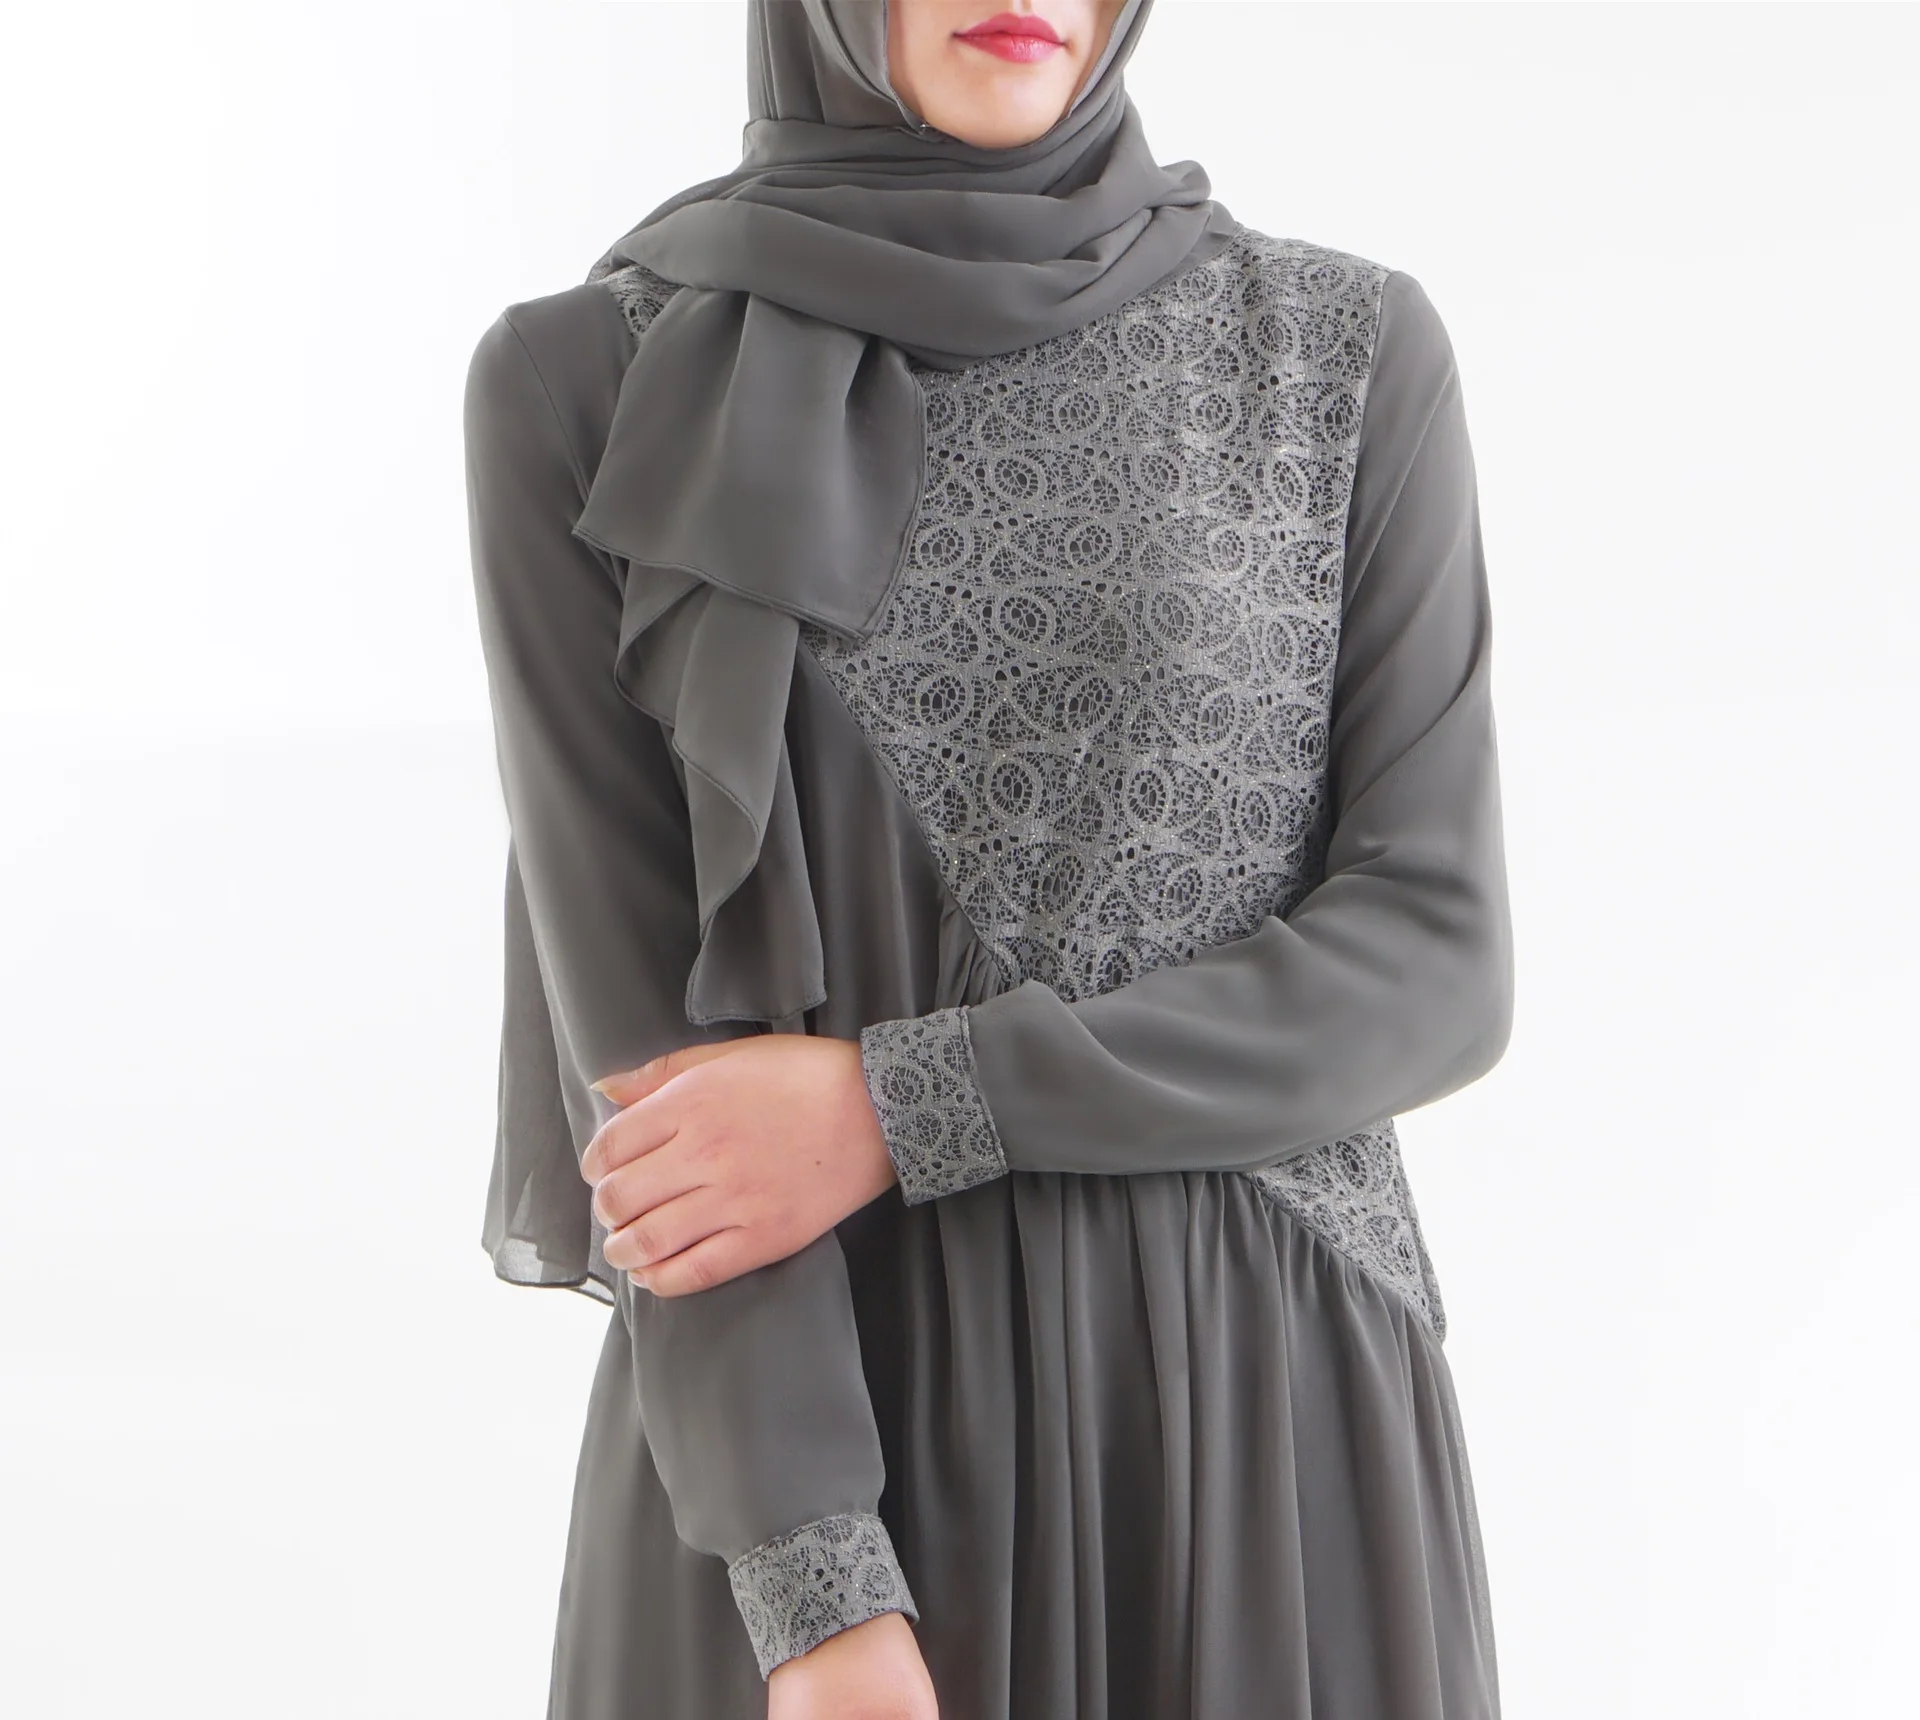 Женское мусульманское длинное платье для девочки кружево abaya Дубай Турецкая индейка Bangladesh Синий Черный Серый халат кимоно Jubah Кафтан Исламская одежда